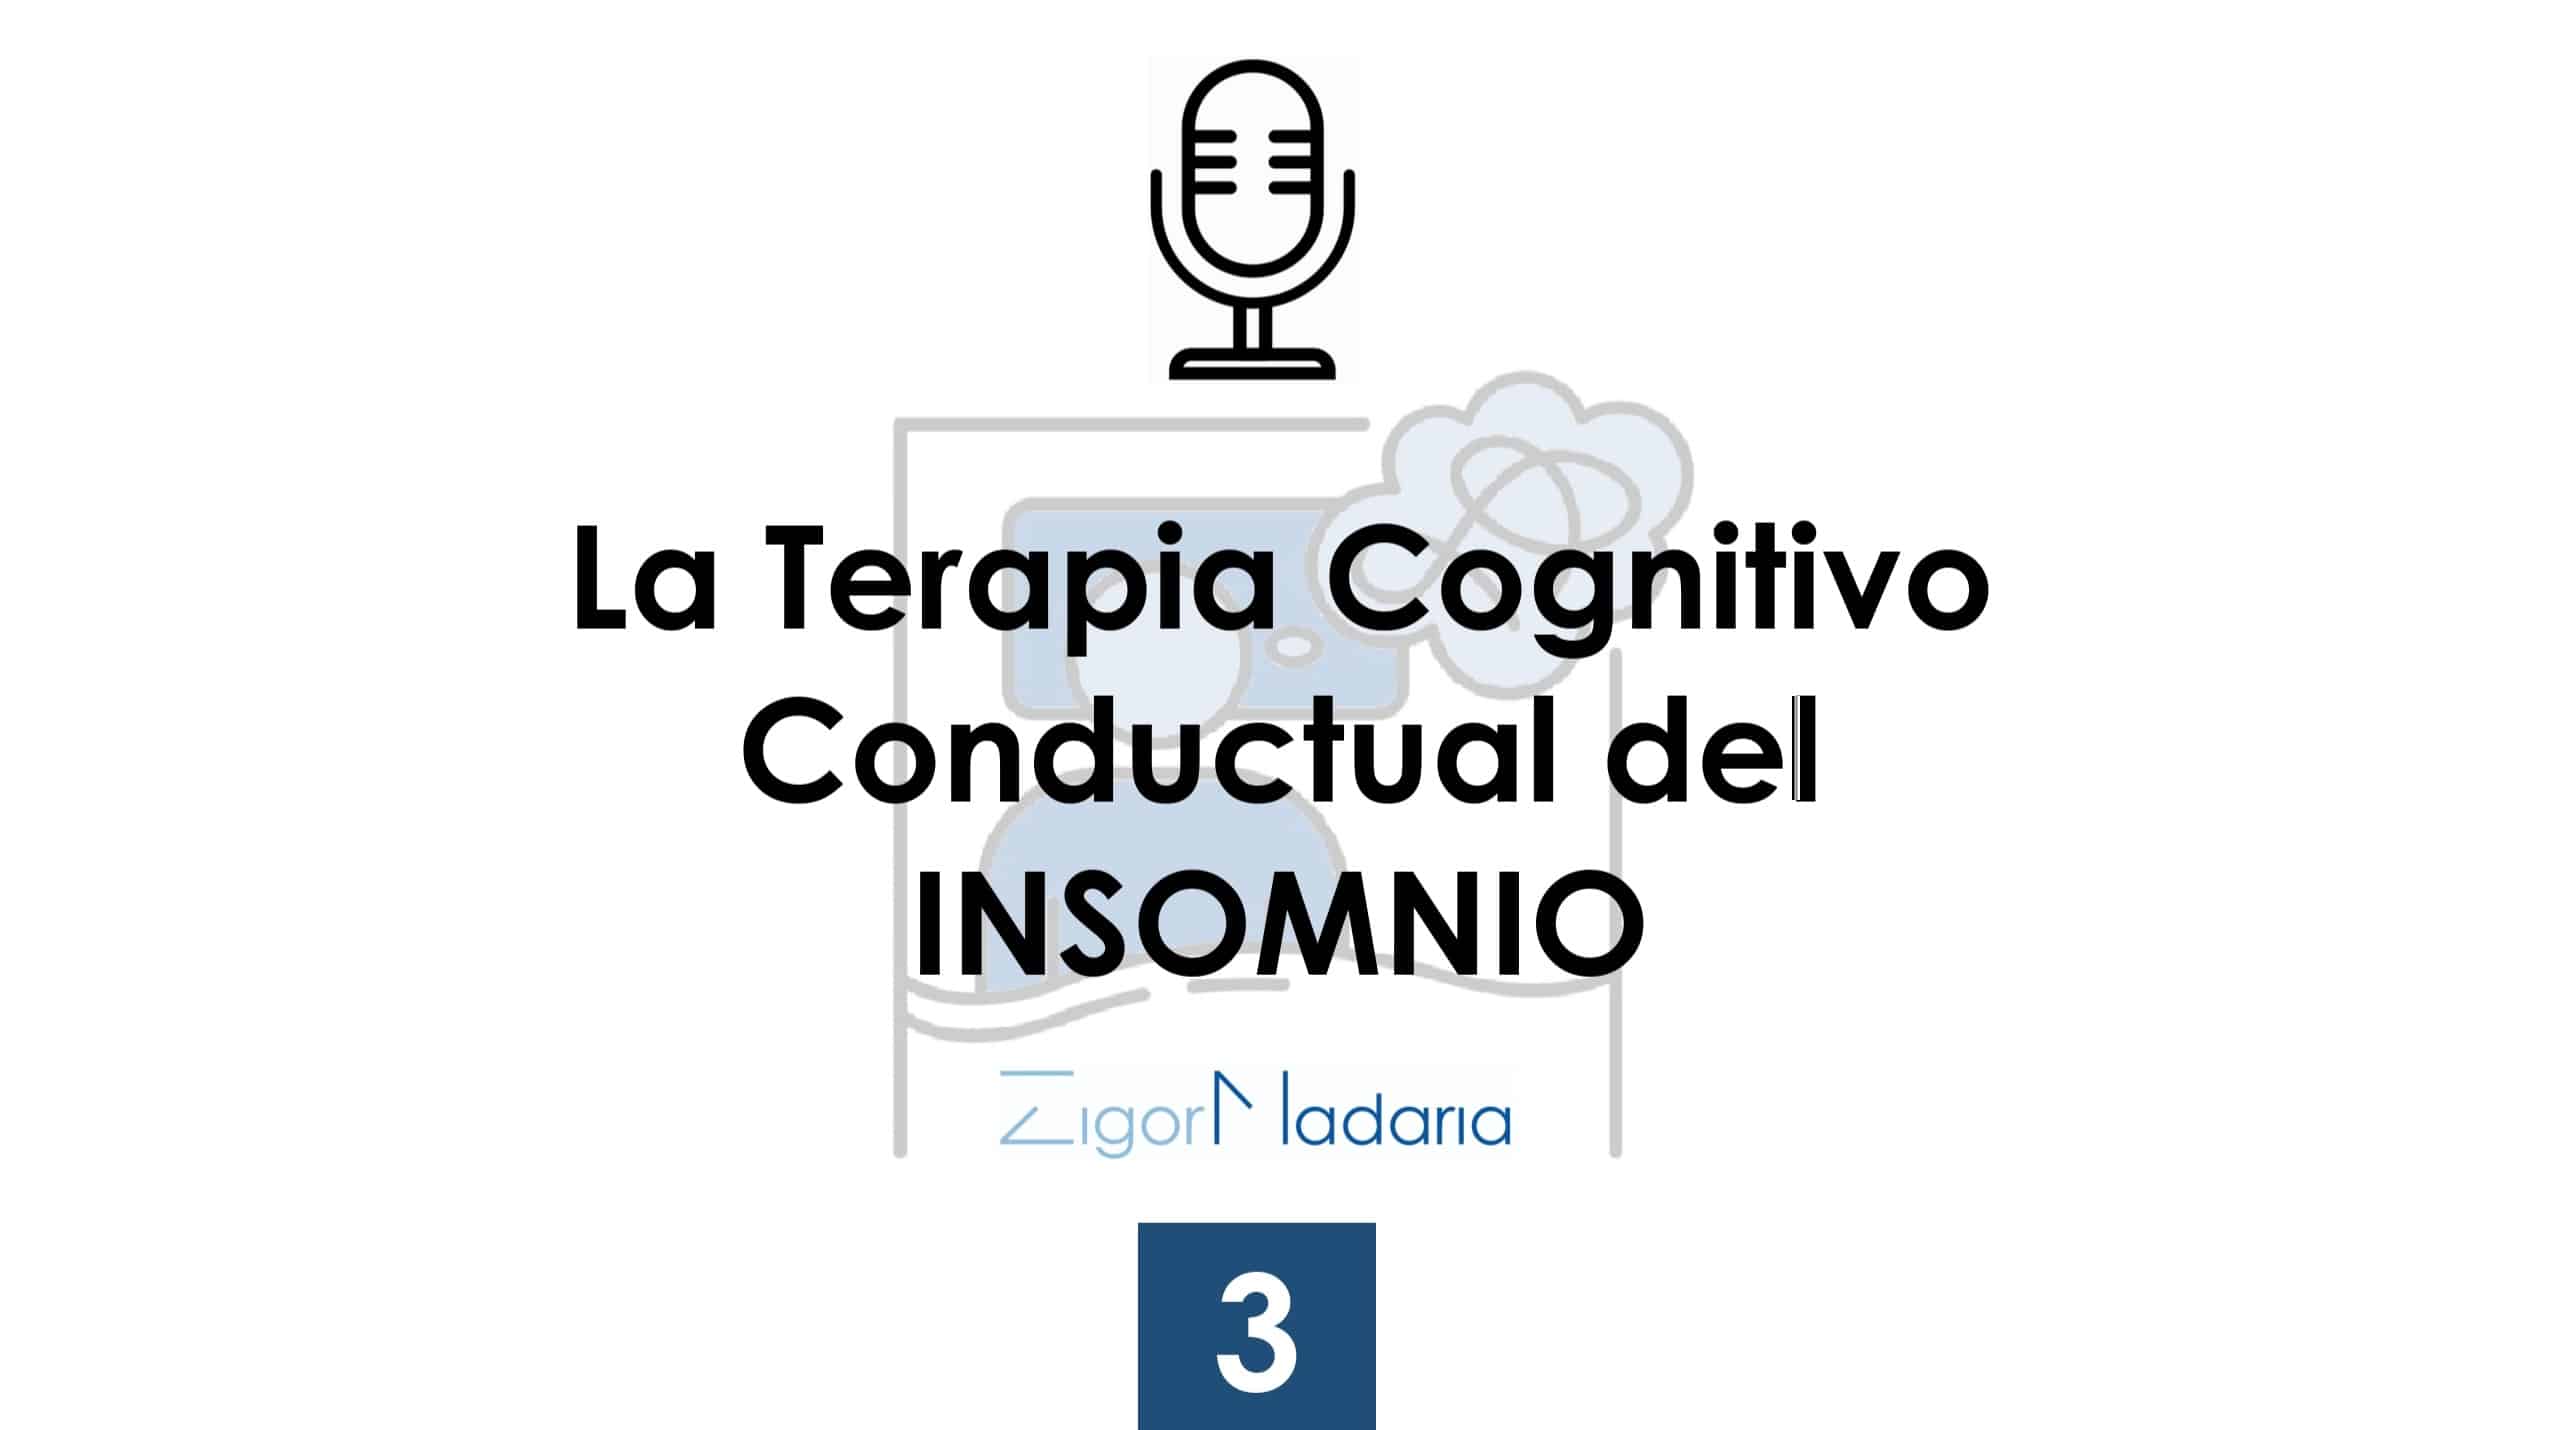 3. La Terapia Cognitivo Conductual del Insomnio